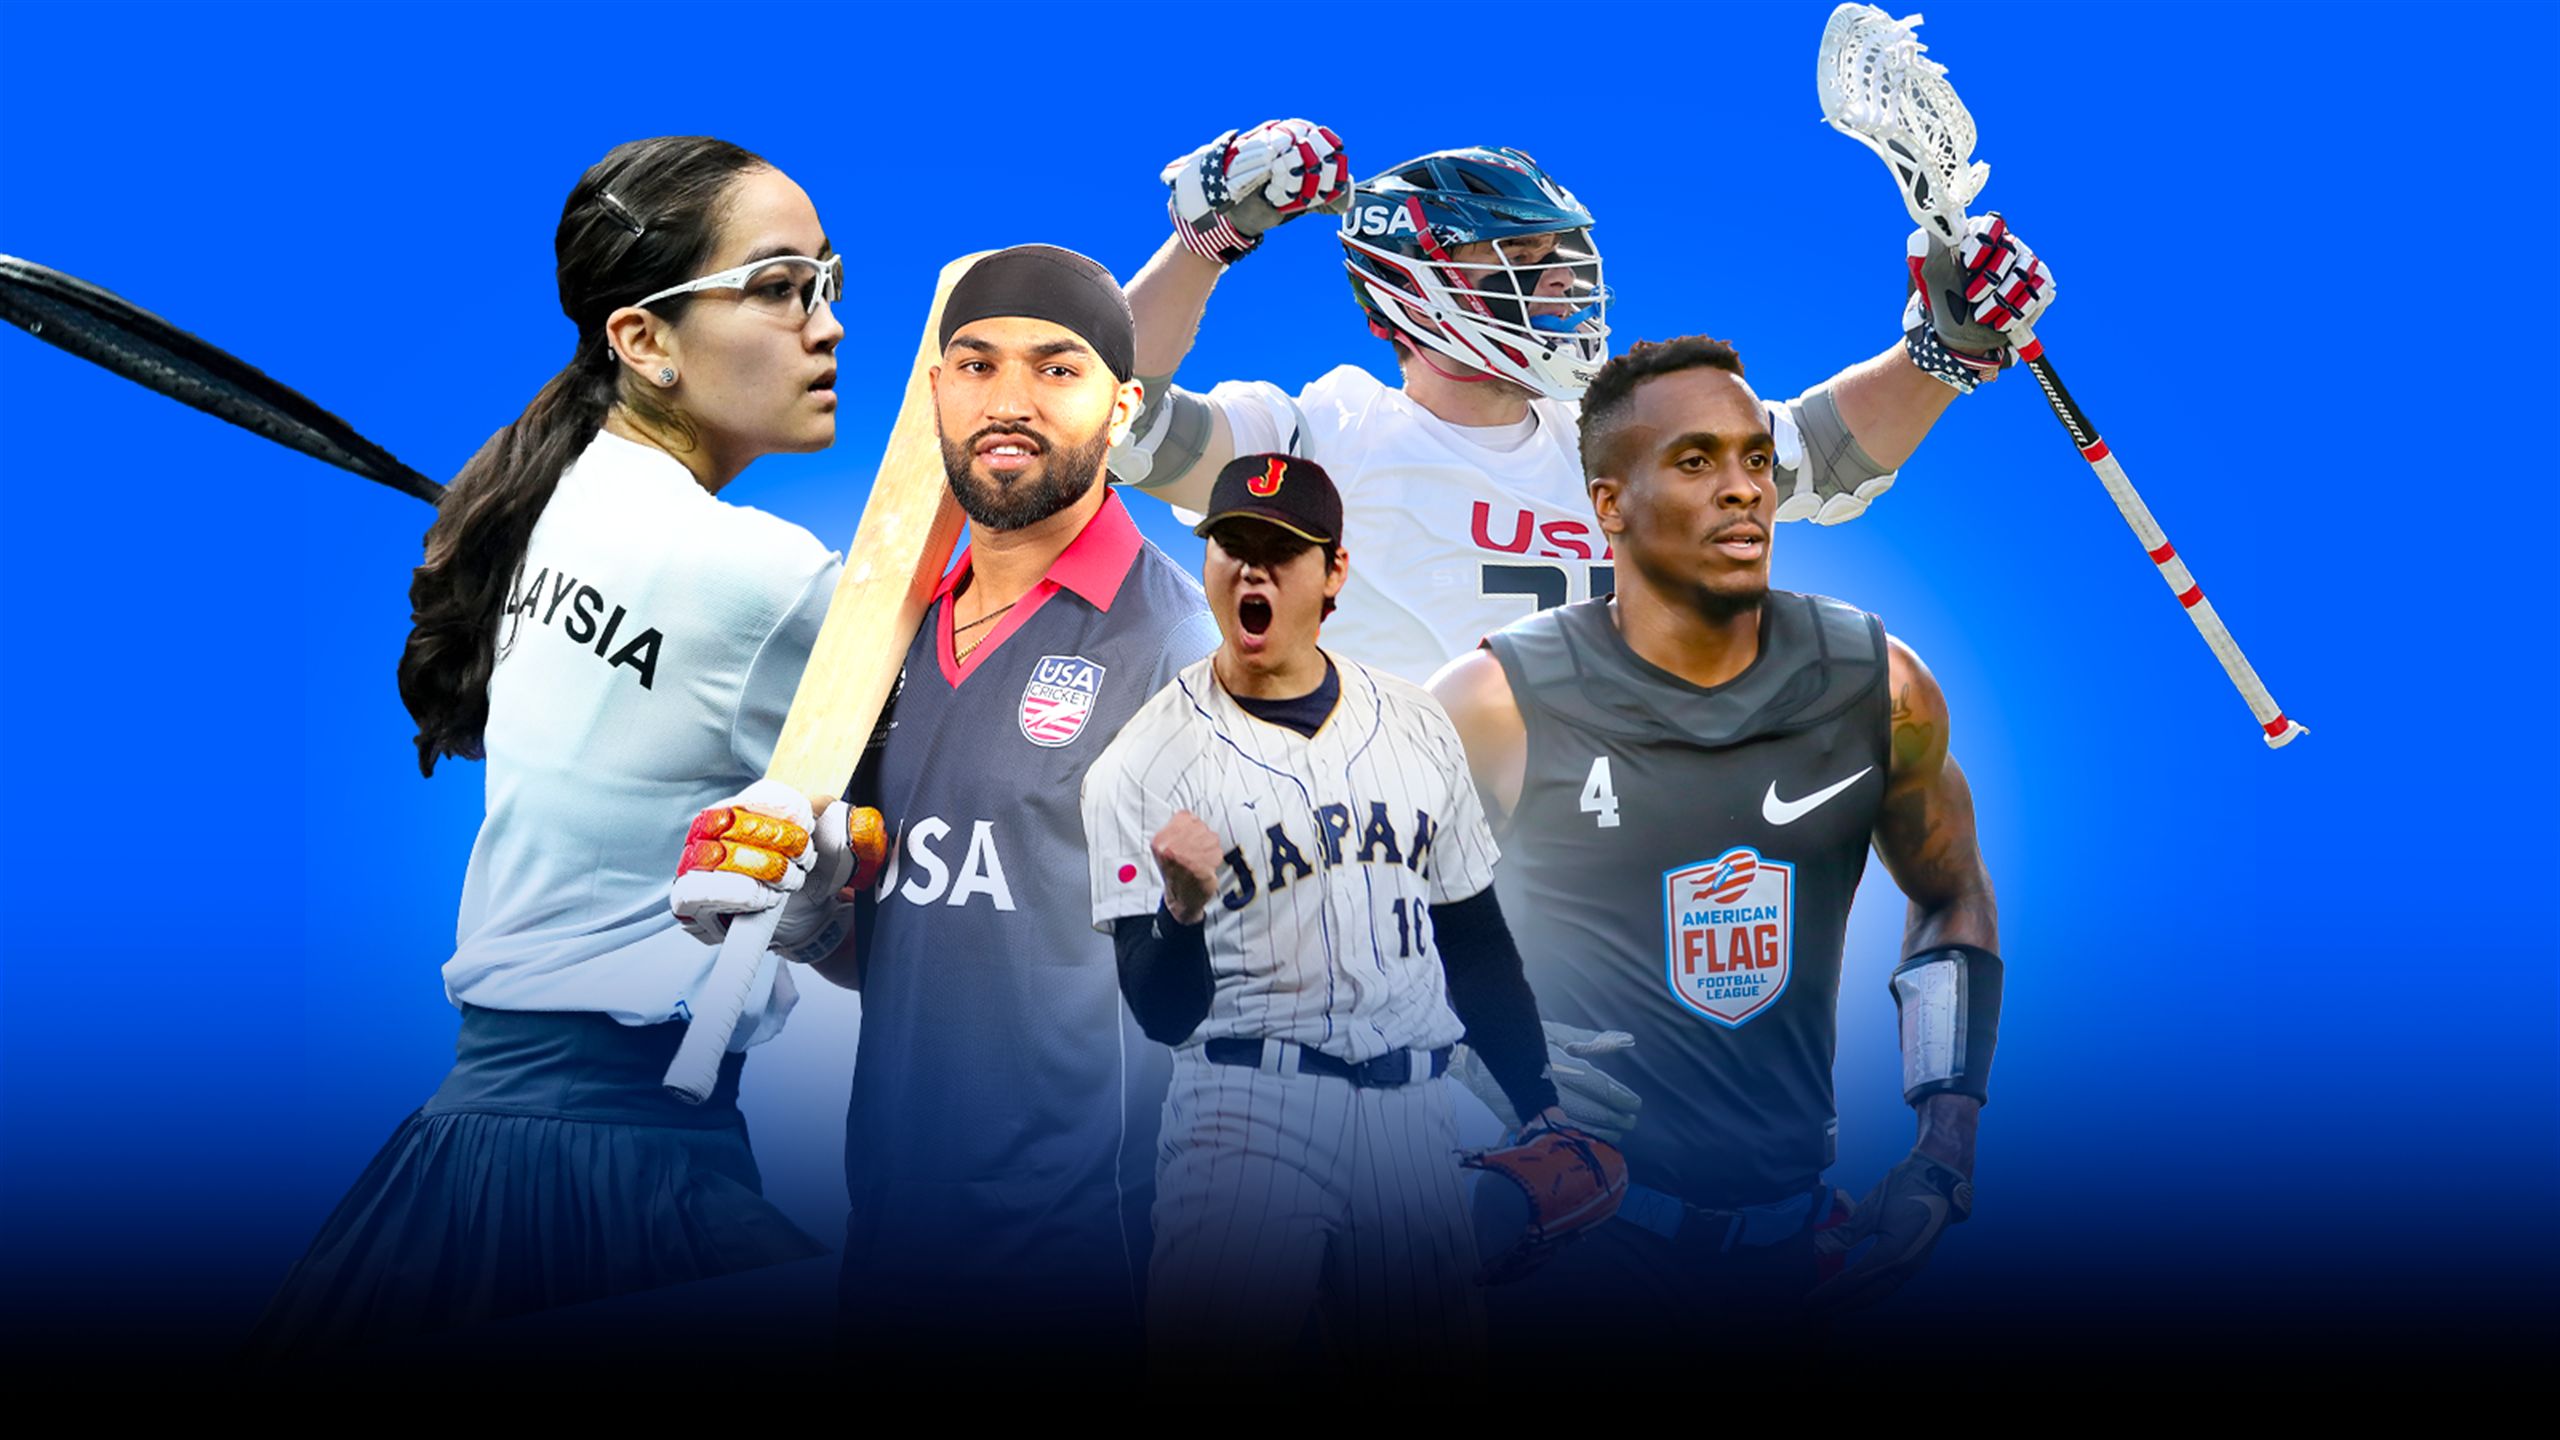 Jogos Olímpicos em 2028 terão críquete, squash, basebol, lacrosse e  flag-football - Renascença